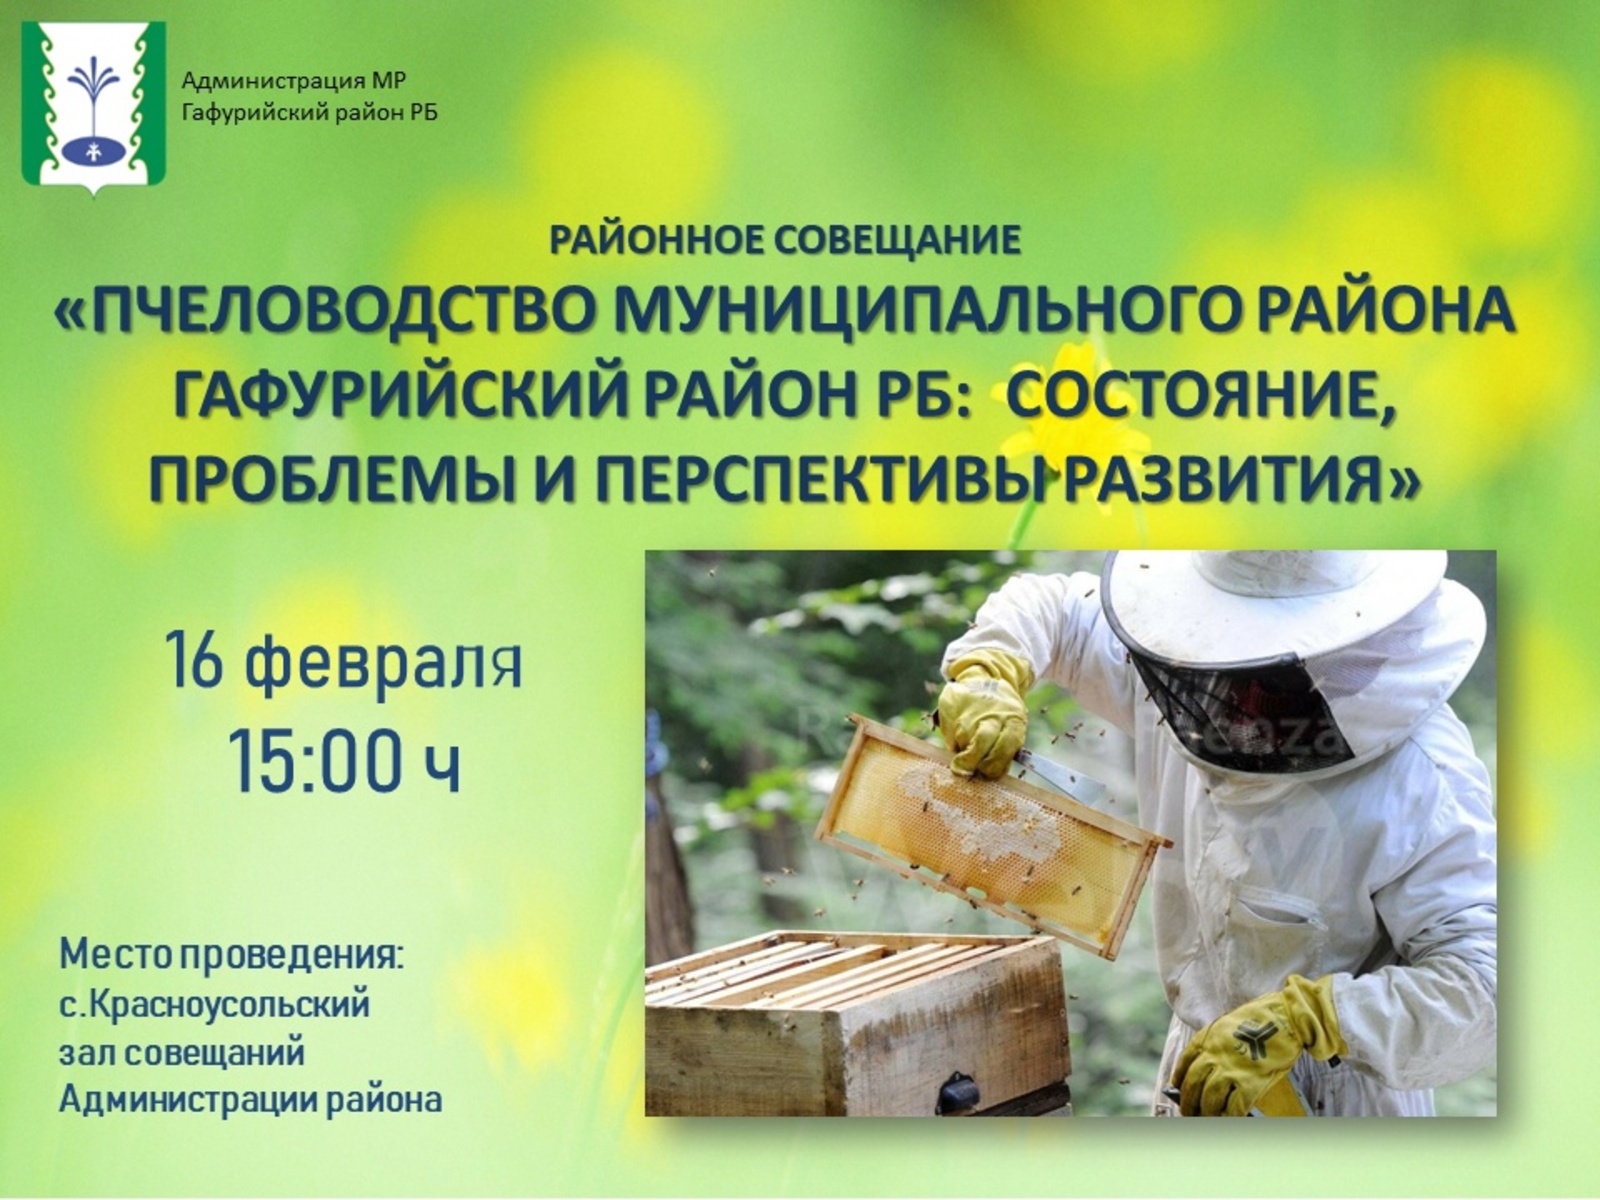 Состоится собрание пчеловодов Гафурийского района